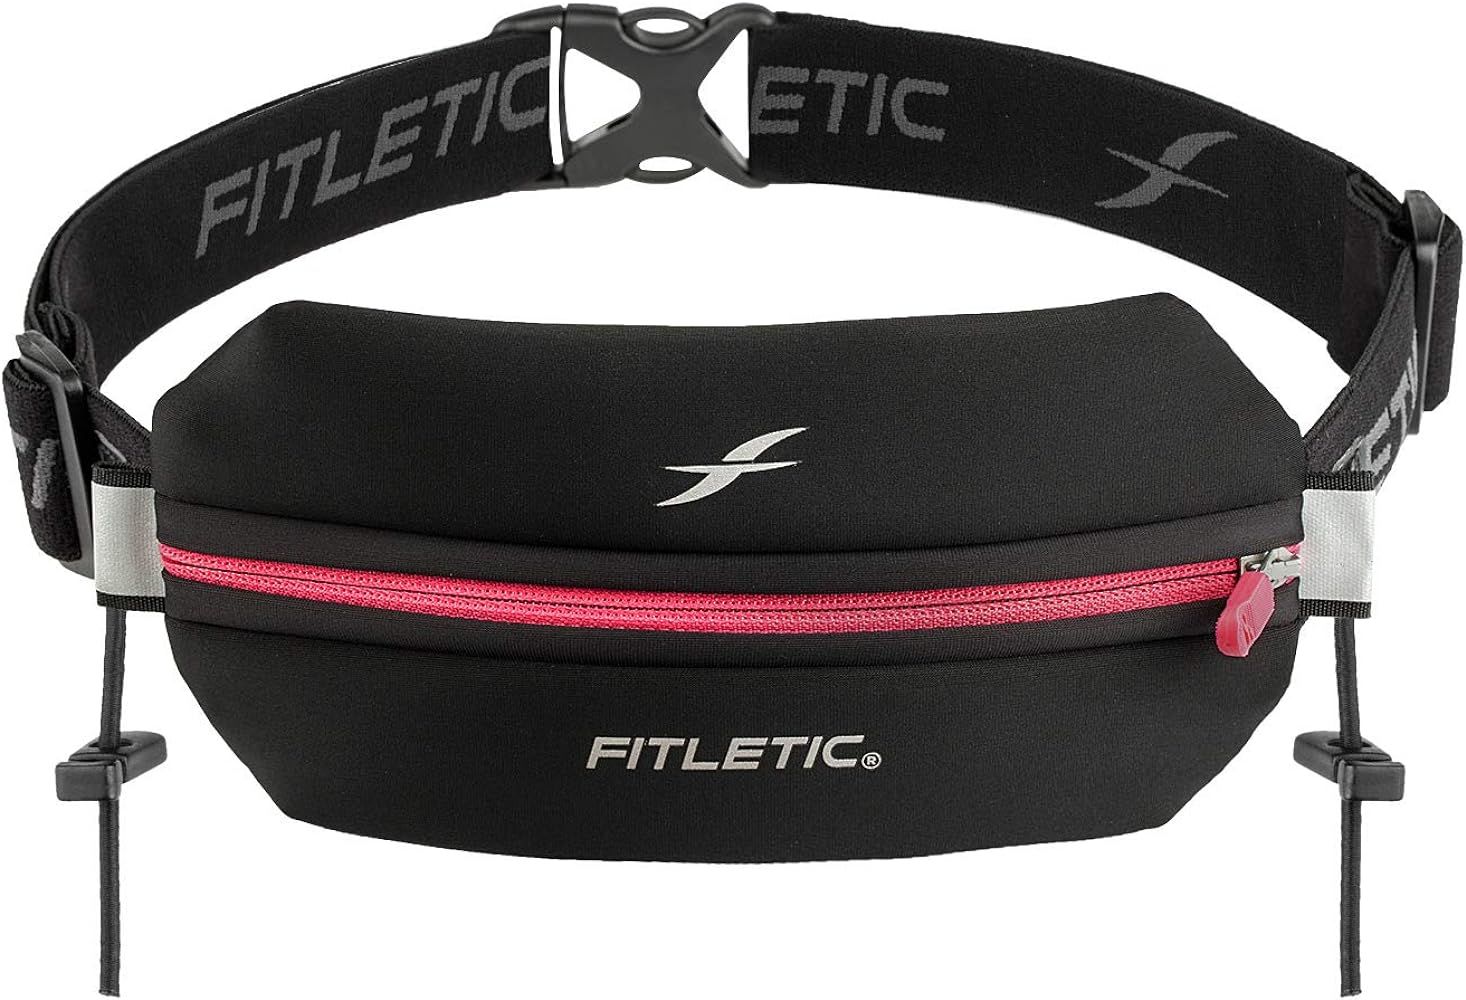 Fitletic Neo Race Belt, Black & Pink | Unique No Bounce Design for Marathon, Triathlon, Trail, 5k... | Amazon (US)